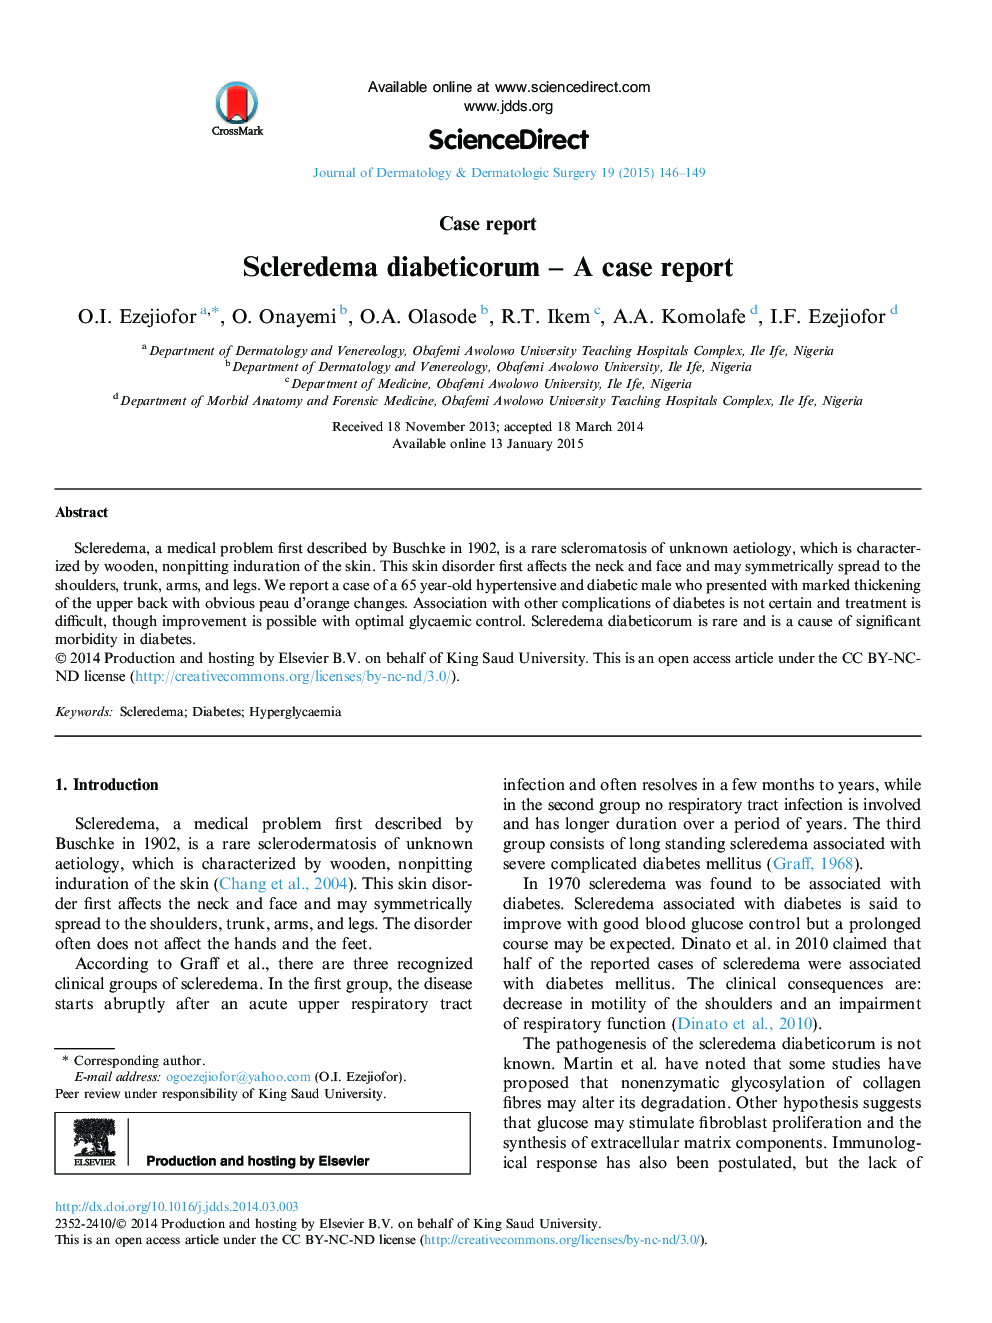 Scleredema diabeticorum – A case report 